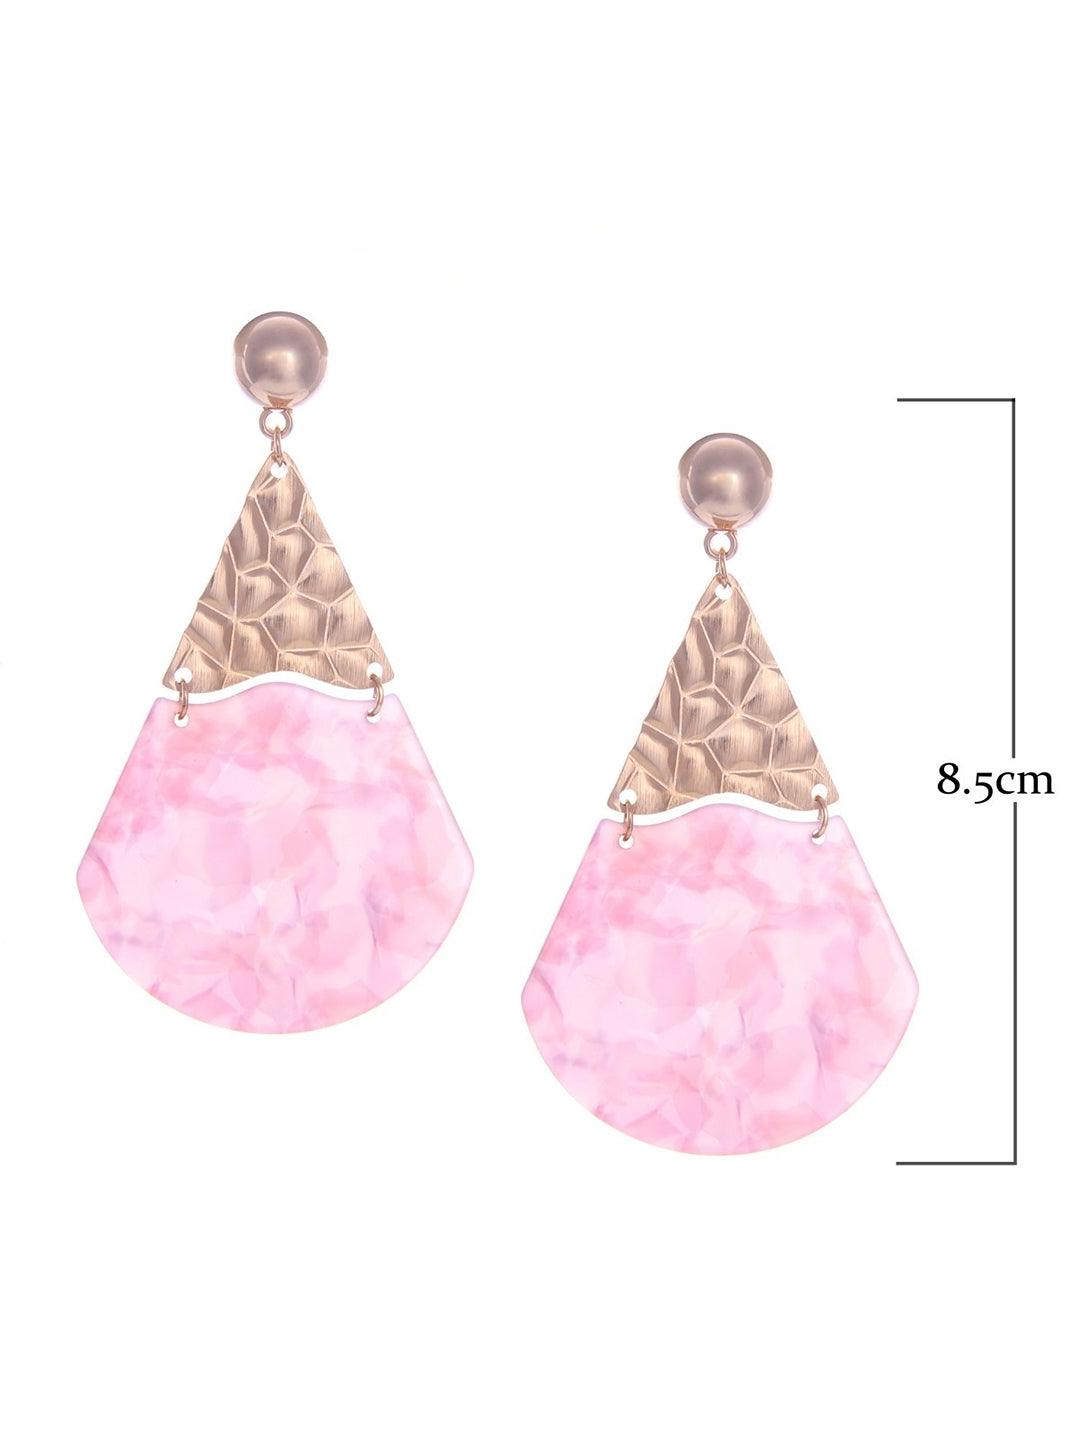 Ishhaara Acrylic Fan Earrings - Pink